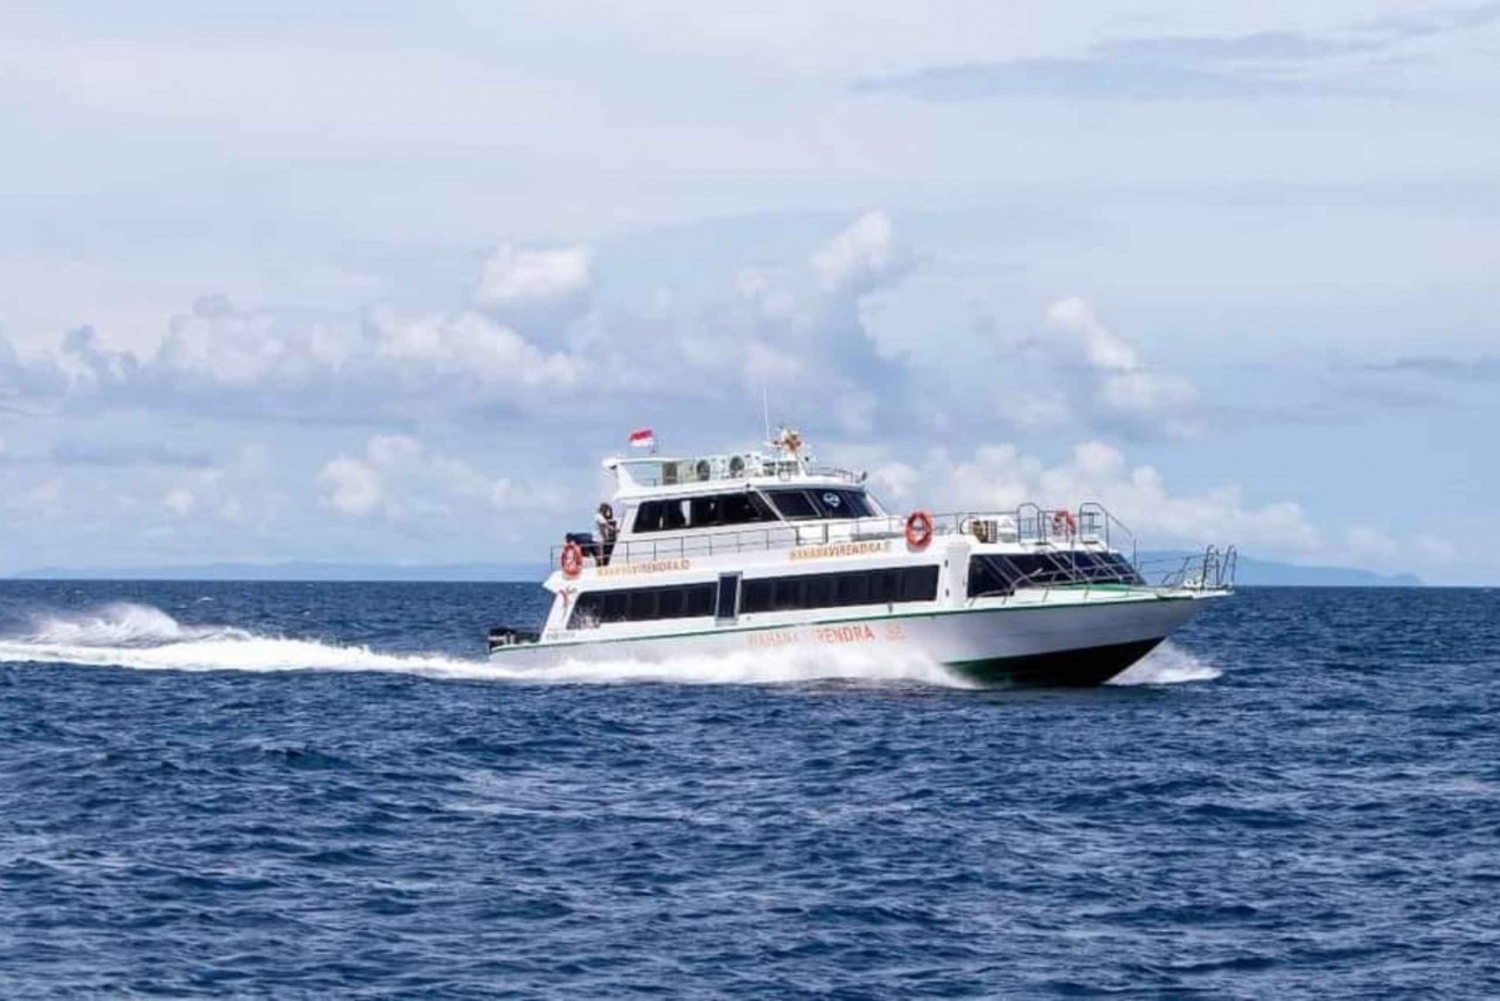 Bali: 1-Way Boat Transfer to Gili Trawangan/Gili Air/Lombok